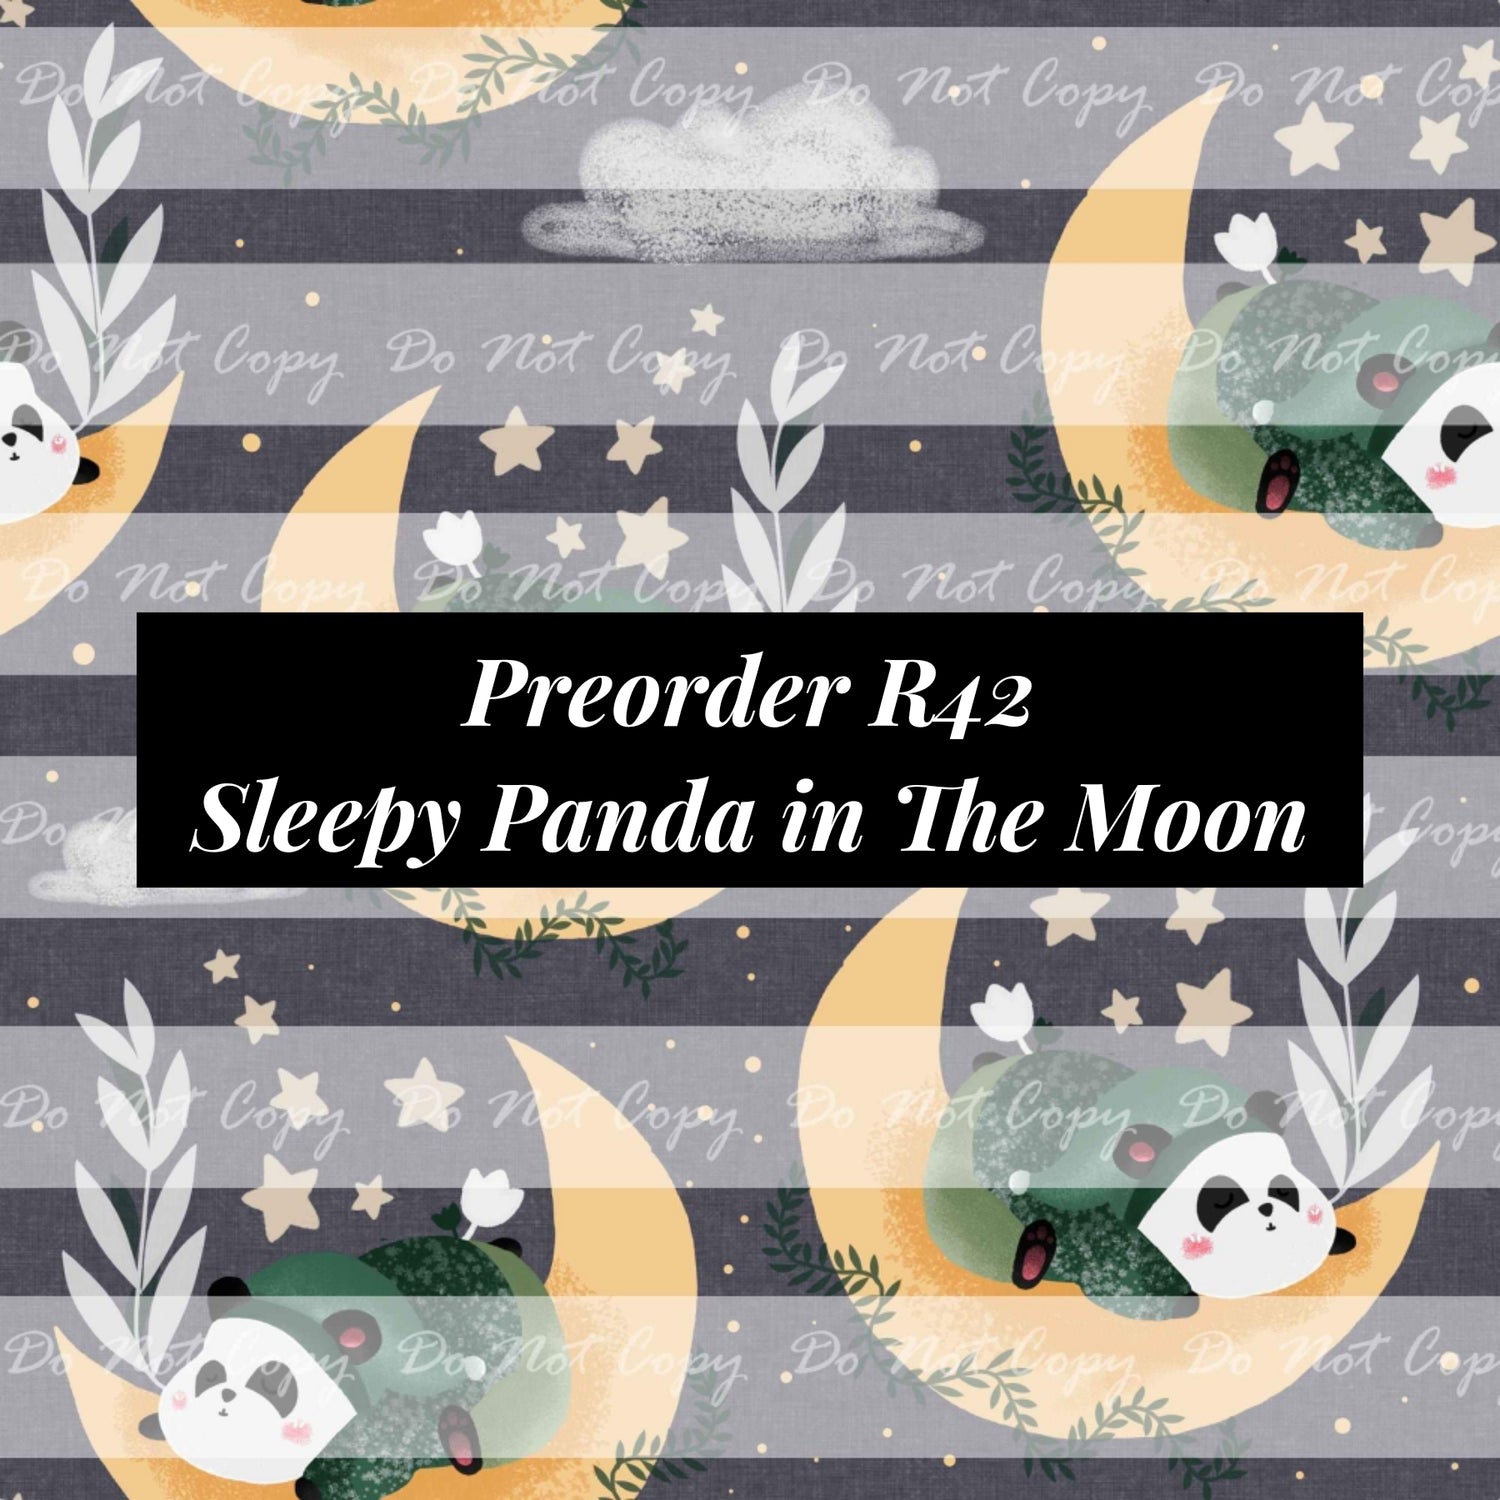 PREORDER R42- Sleepy Panda in the Moon